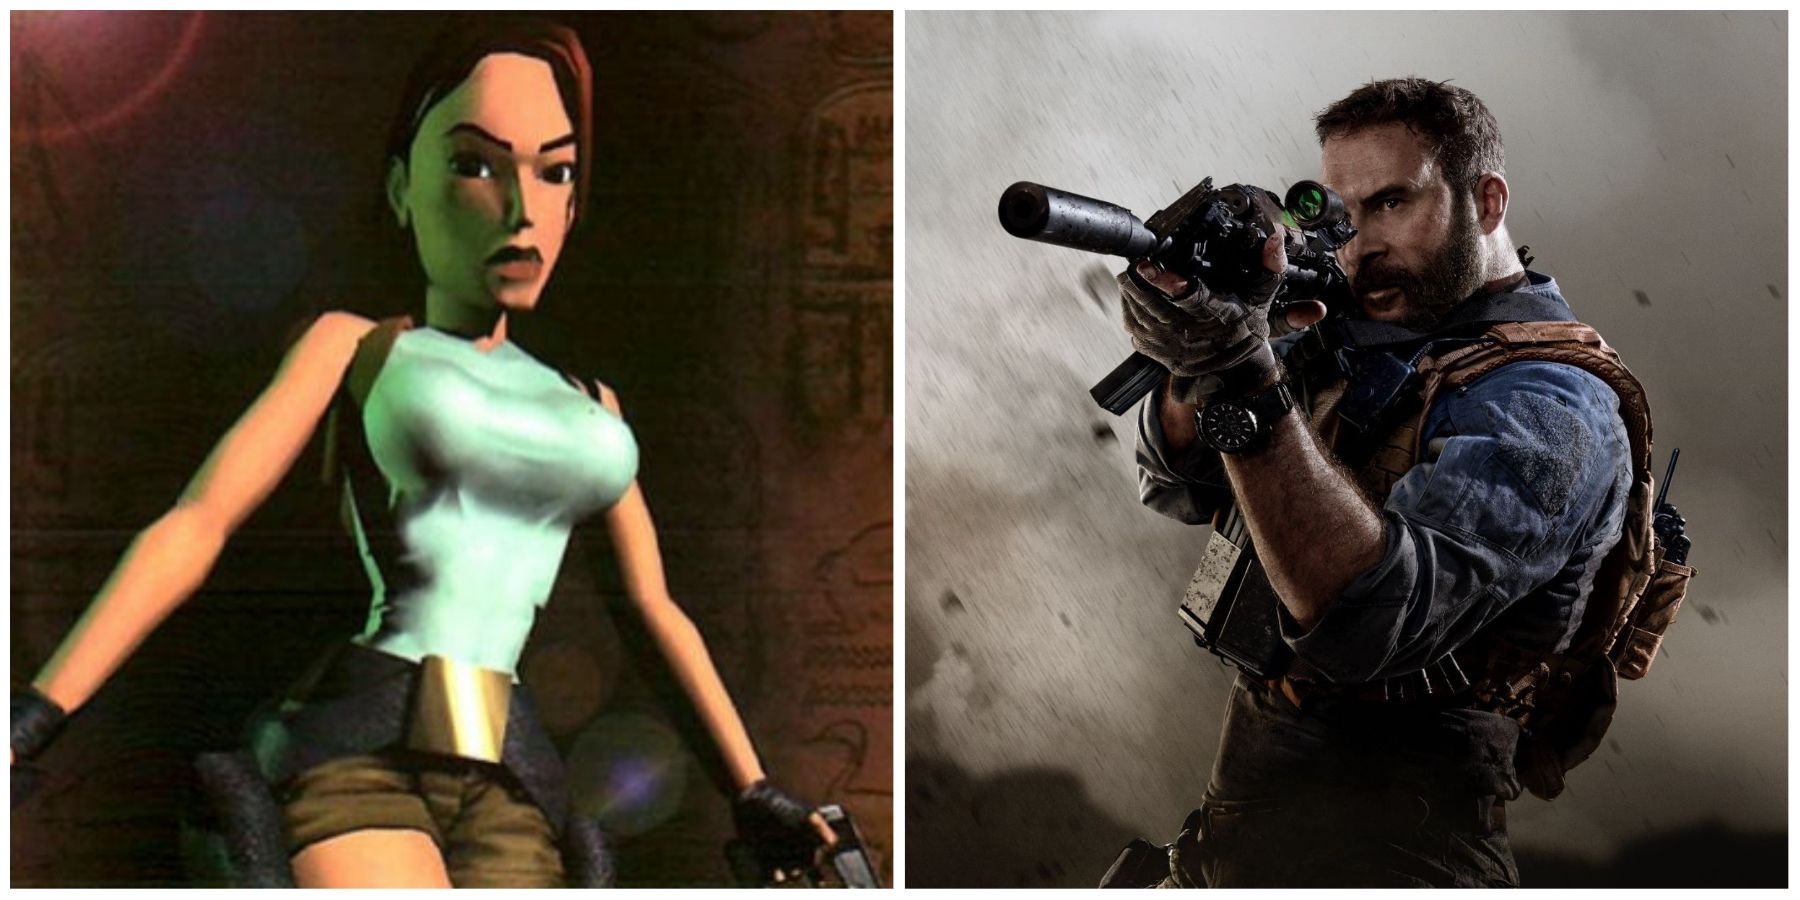 (Left) Lara Croft (Right) Captain Price